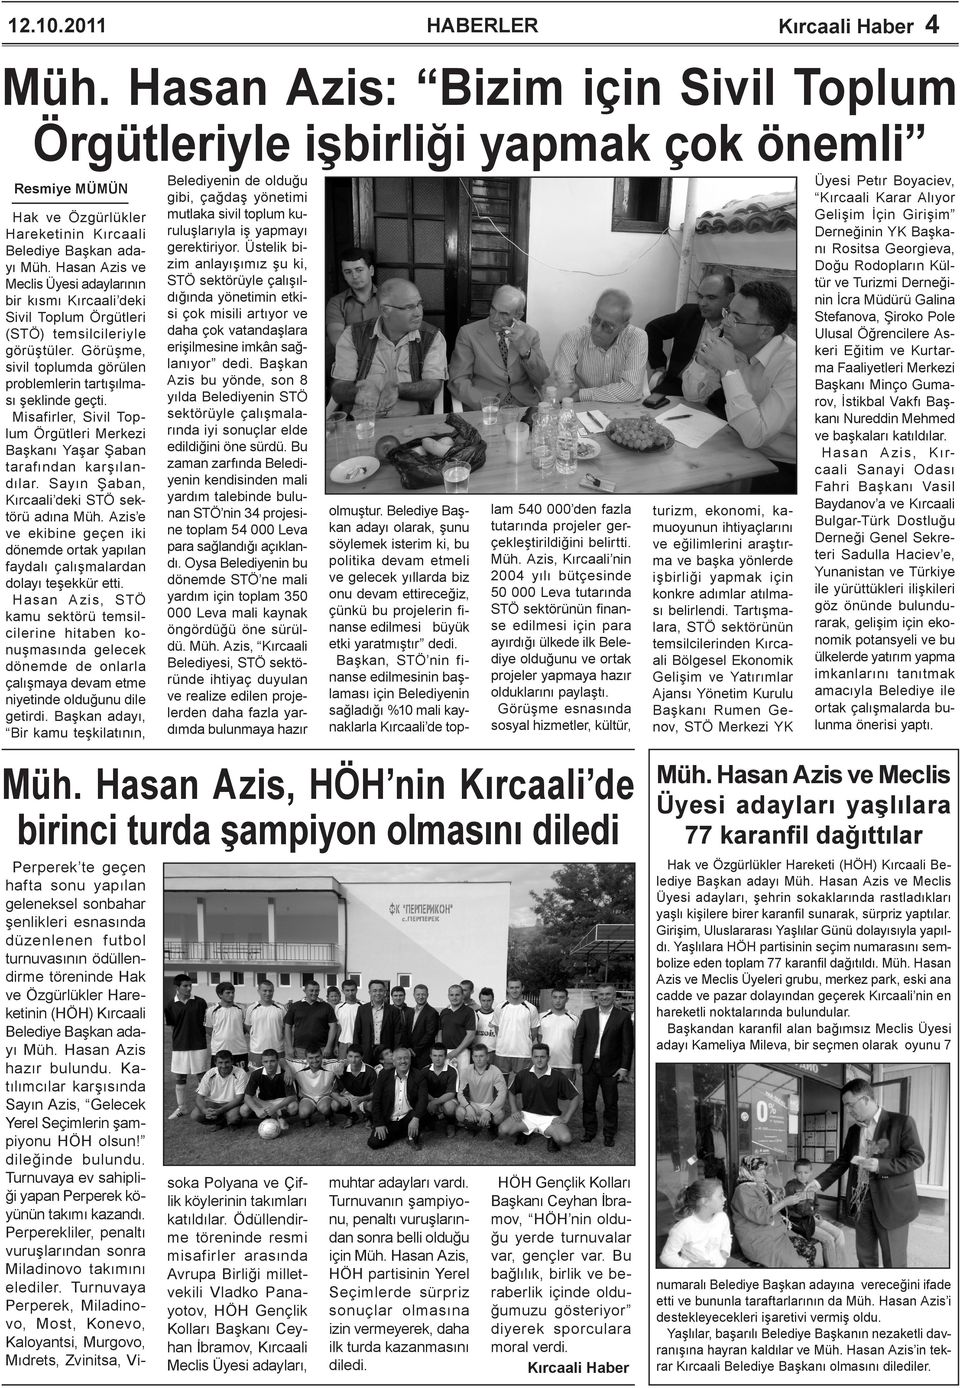 Misafirler, Sivil Toplum Örgütleri Merkezi Başkanı Yaşar Şaban tarafından karşılandılar. Sayın Şaban, Kırcaali deki STÖ sektörü adına Müh.